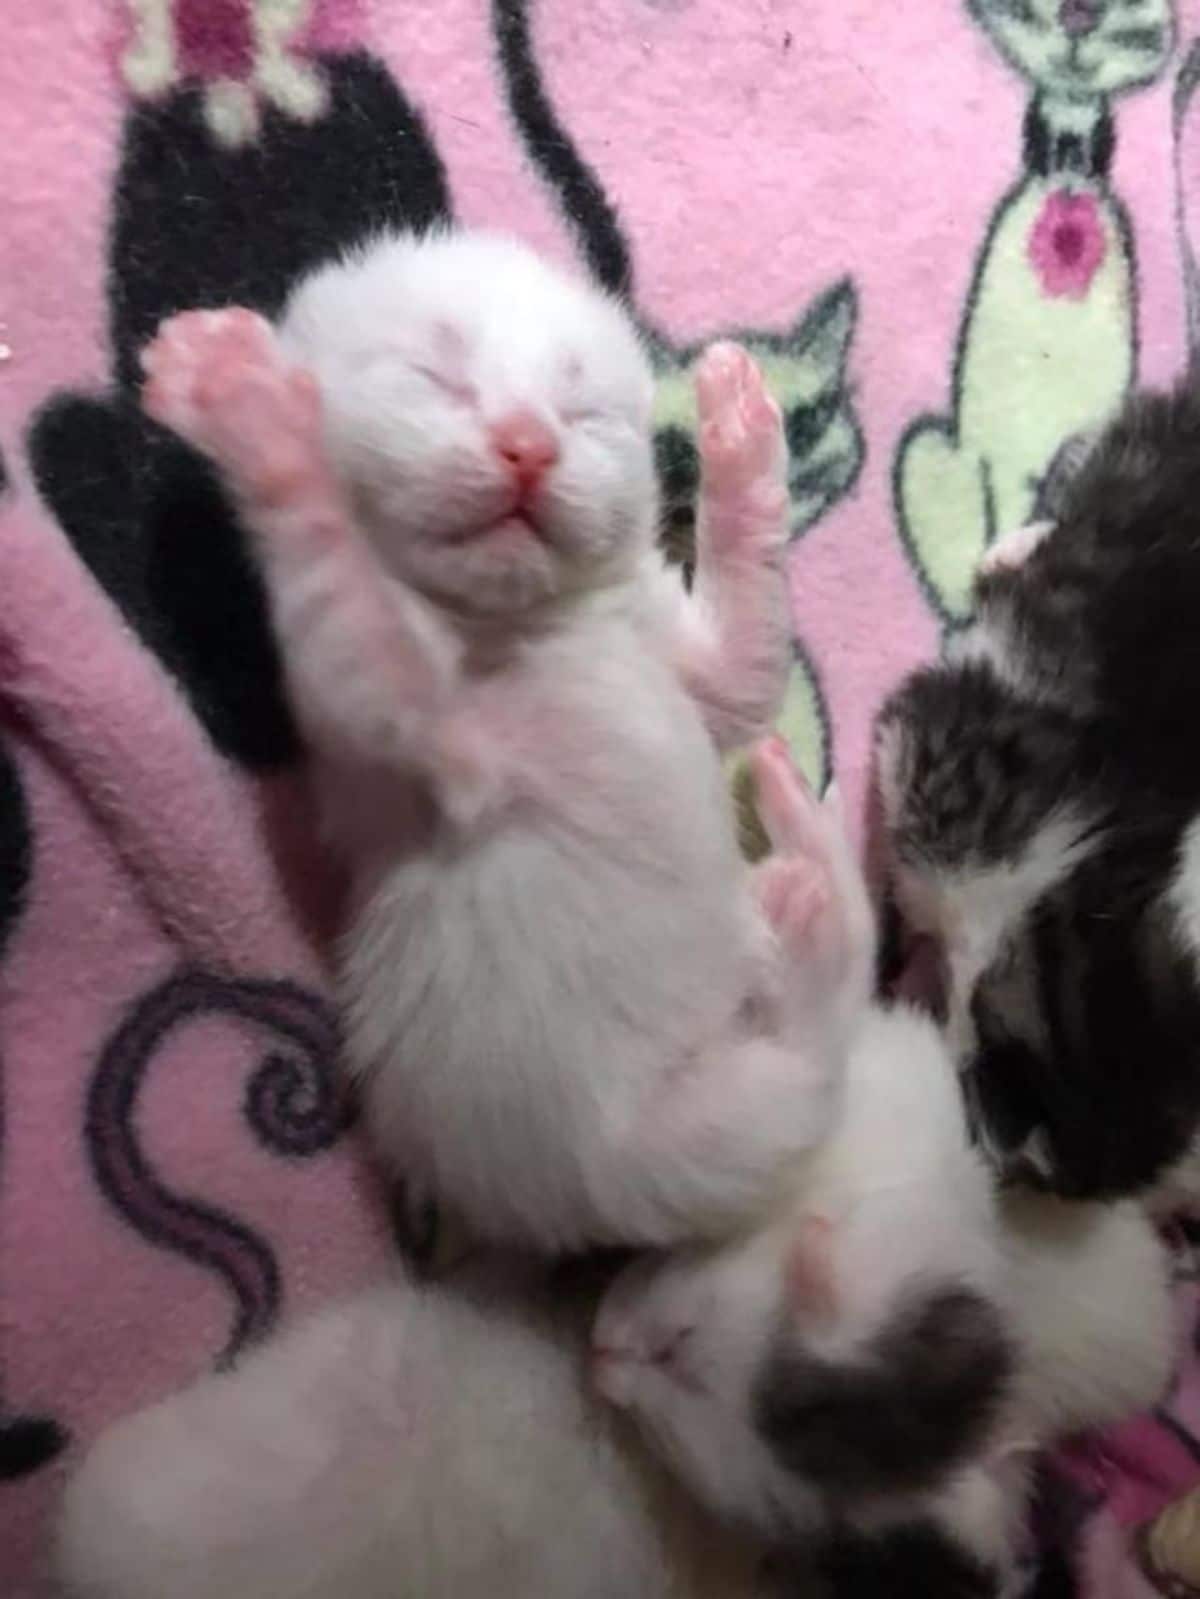 3 kittens 1 white kitten sleeping belly up and 2 black and white kittens